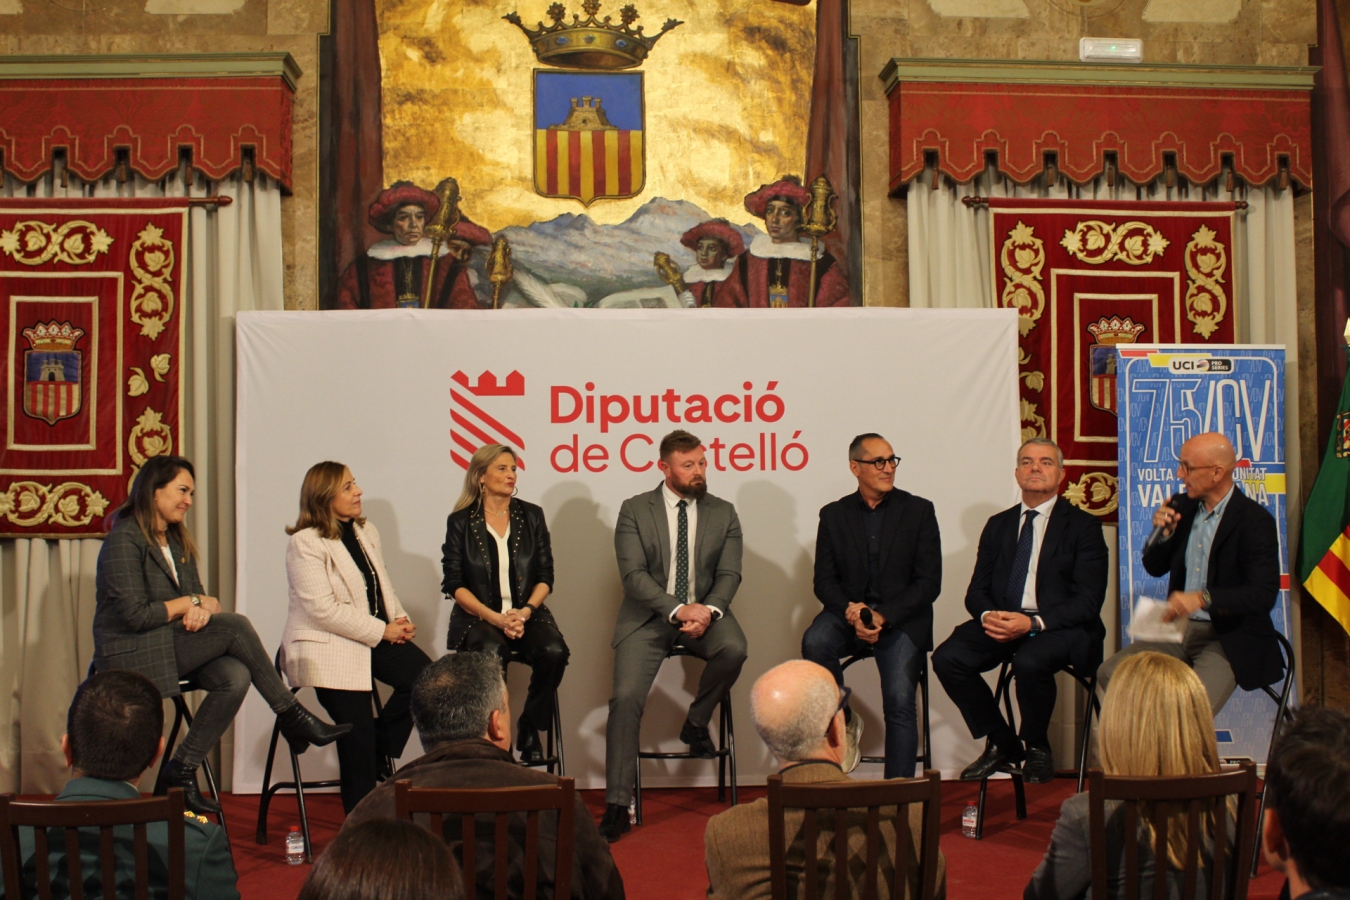 La Diputación de Castellón acoge la presentación de la primera etapa de la 75VCV – Volta Comunitat Valenciana Gran Premi Sabadell